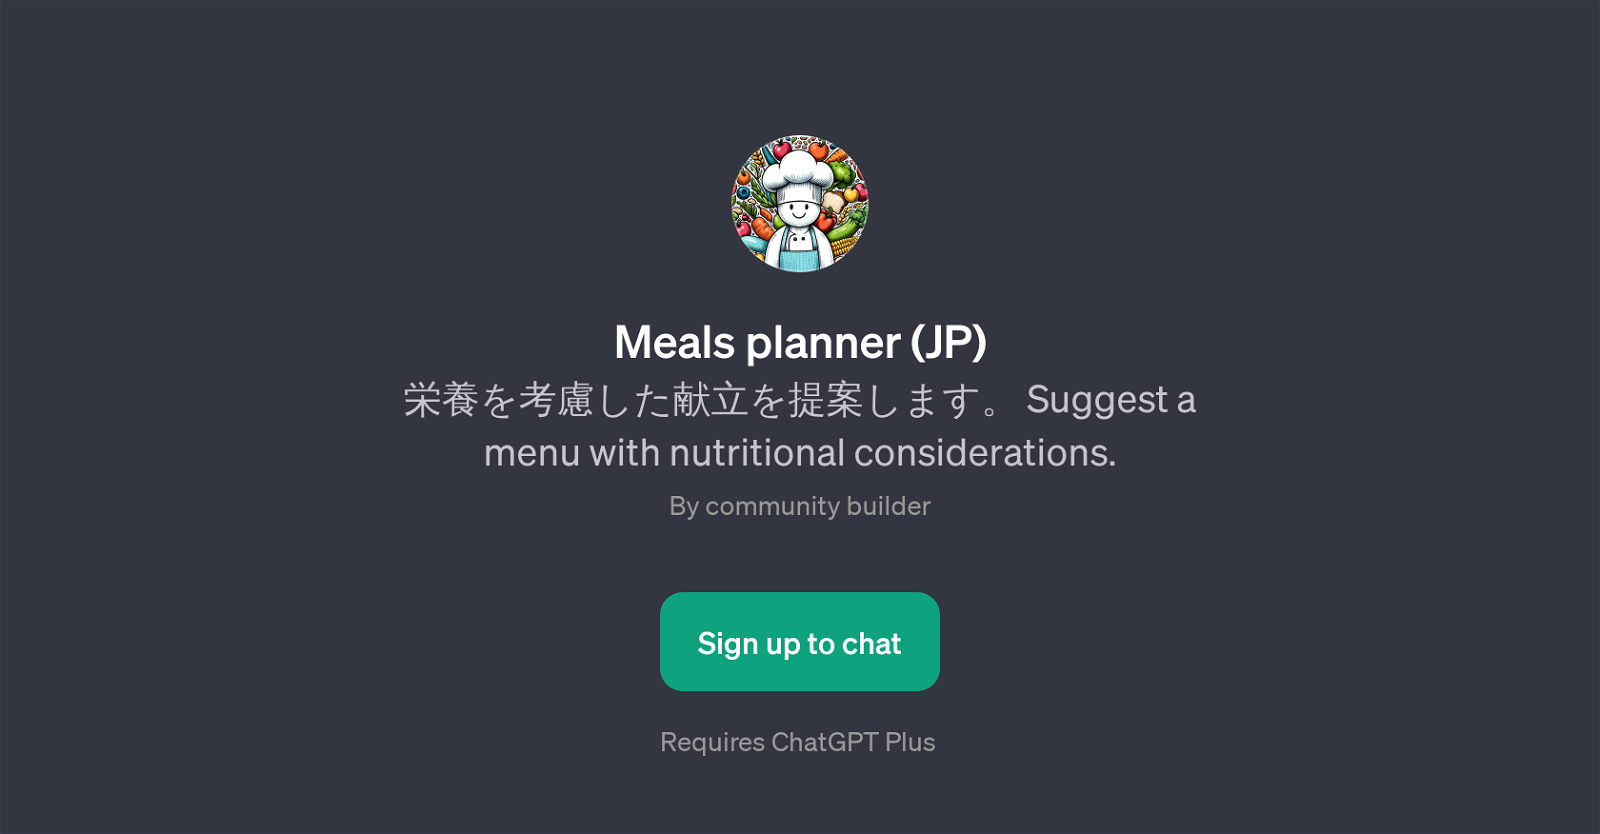 Meals planner (JP) website